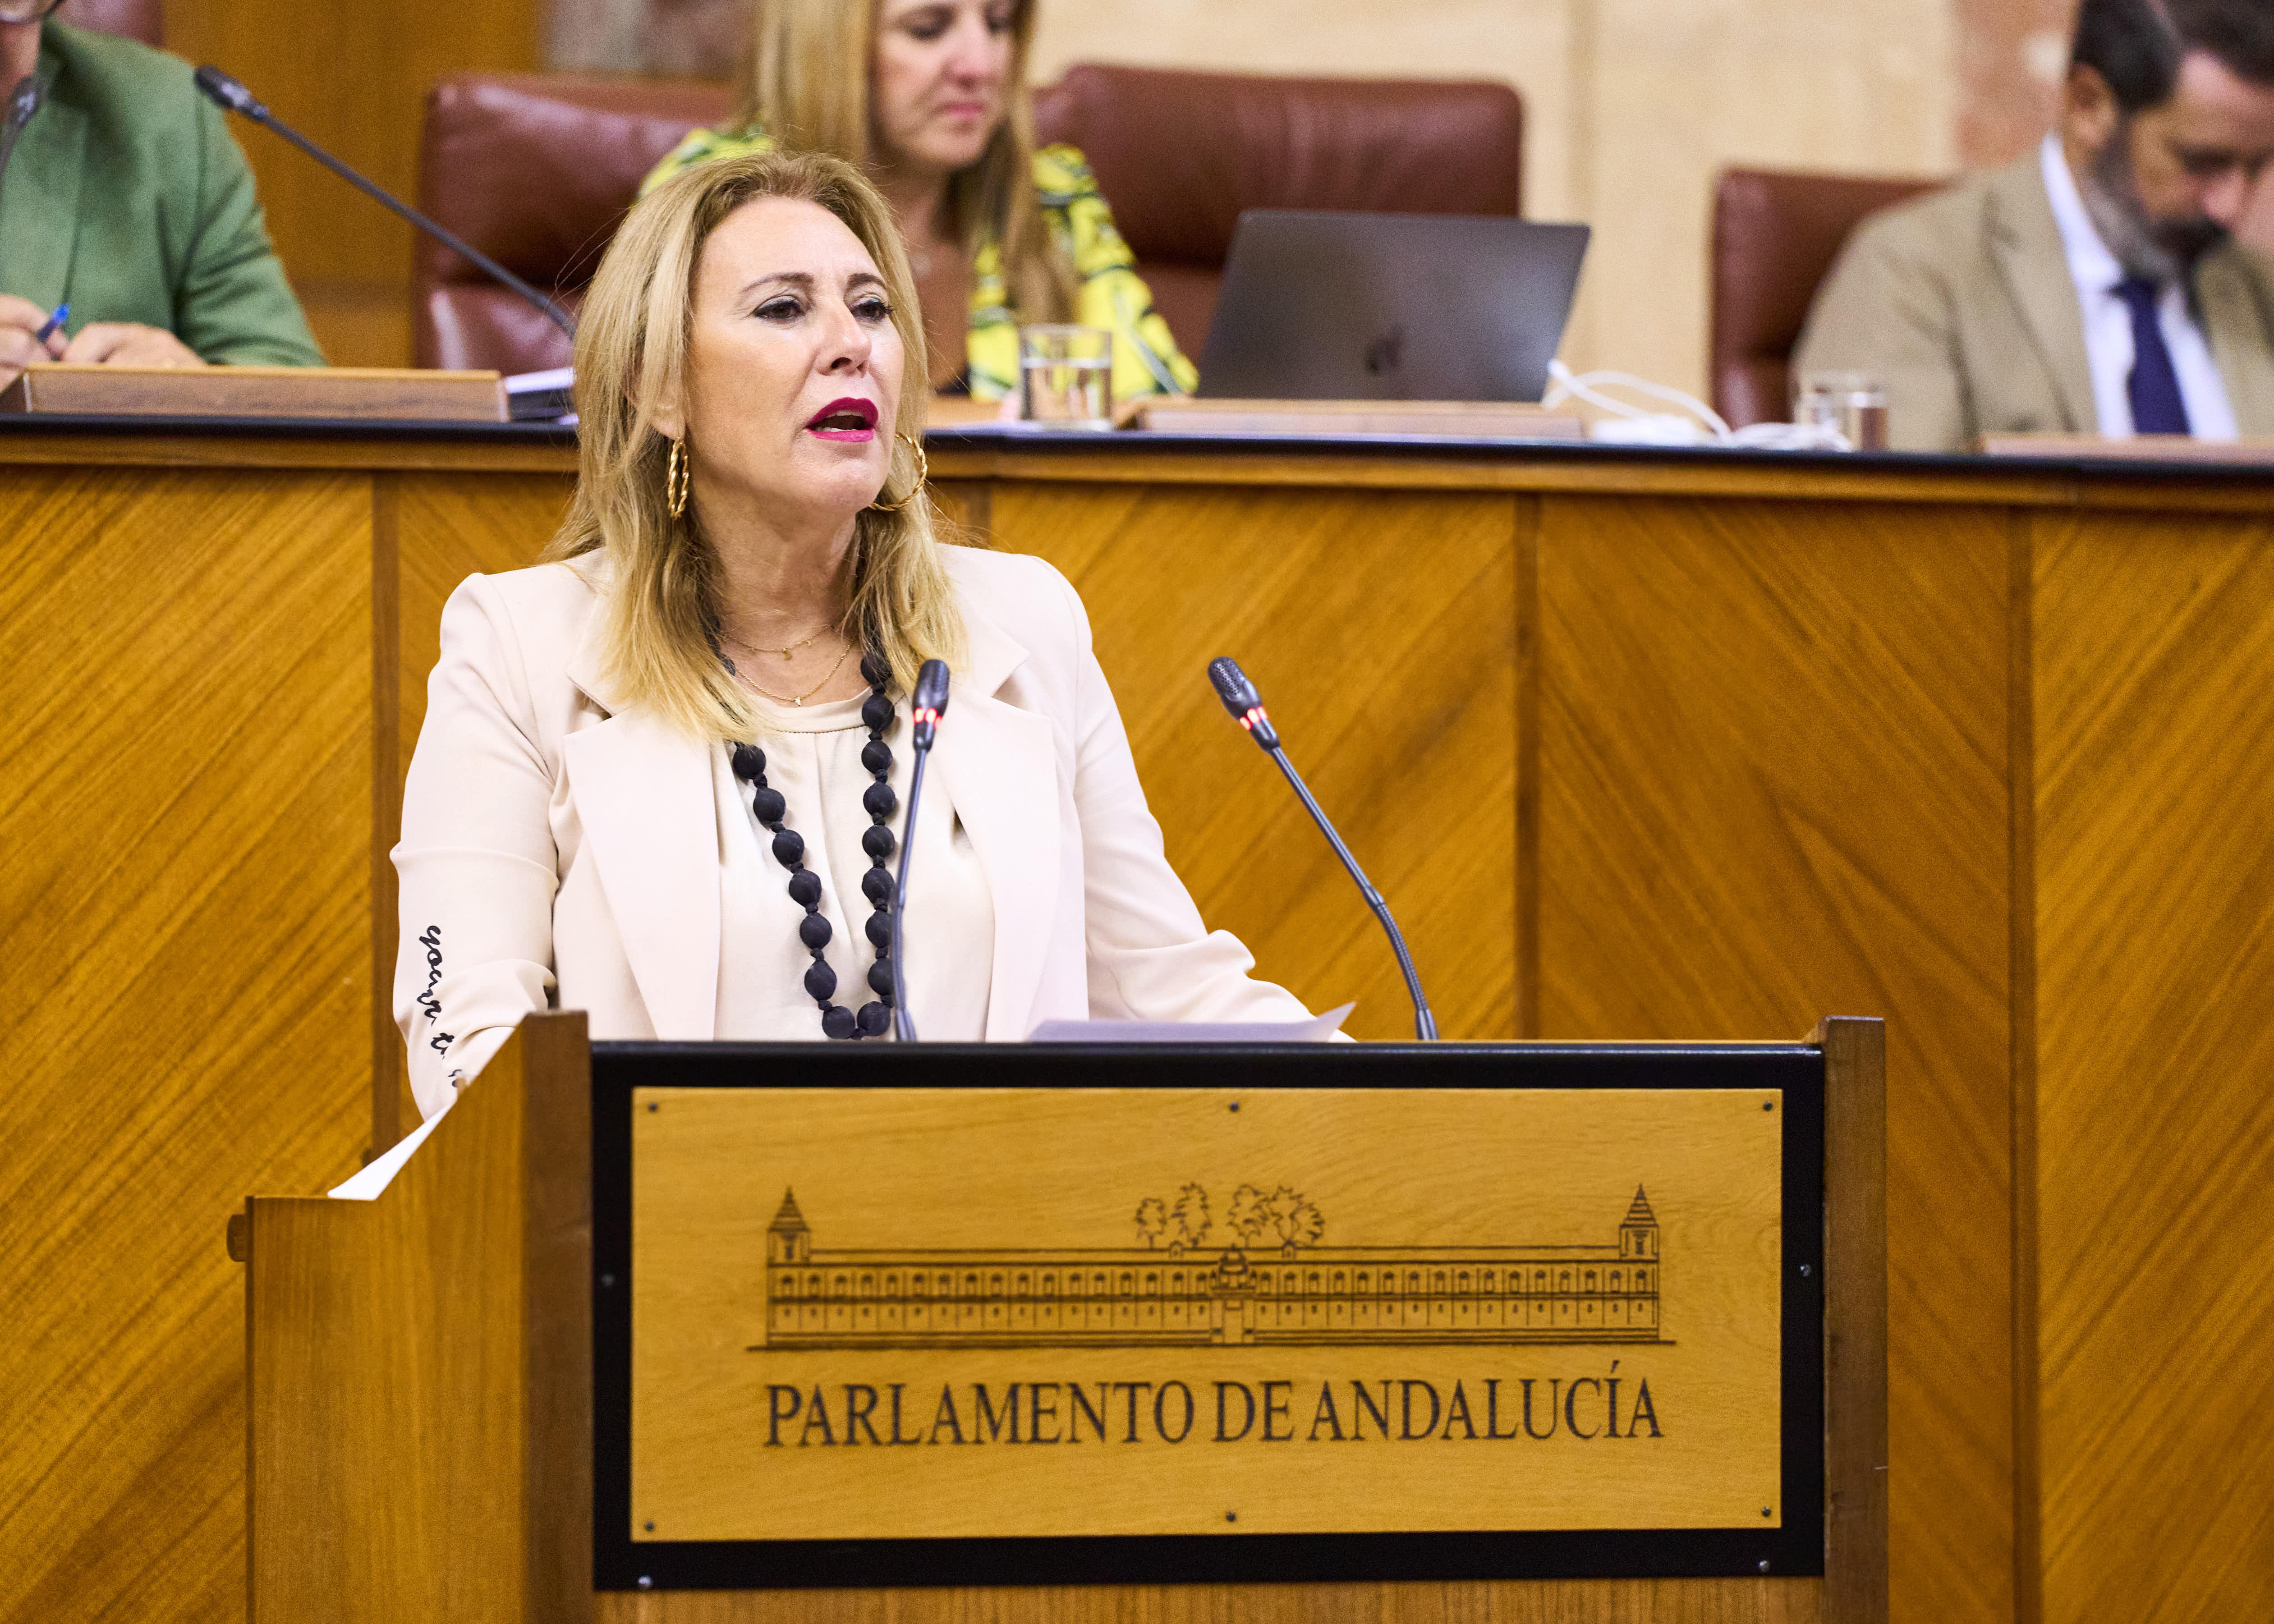  Carolina España, consejera de Economía, Hacienda y Fondos Europeos, interviene ante el Pleno